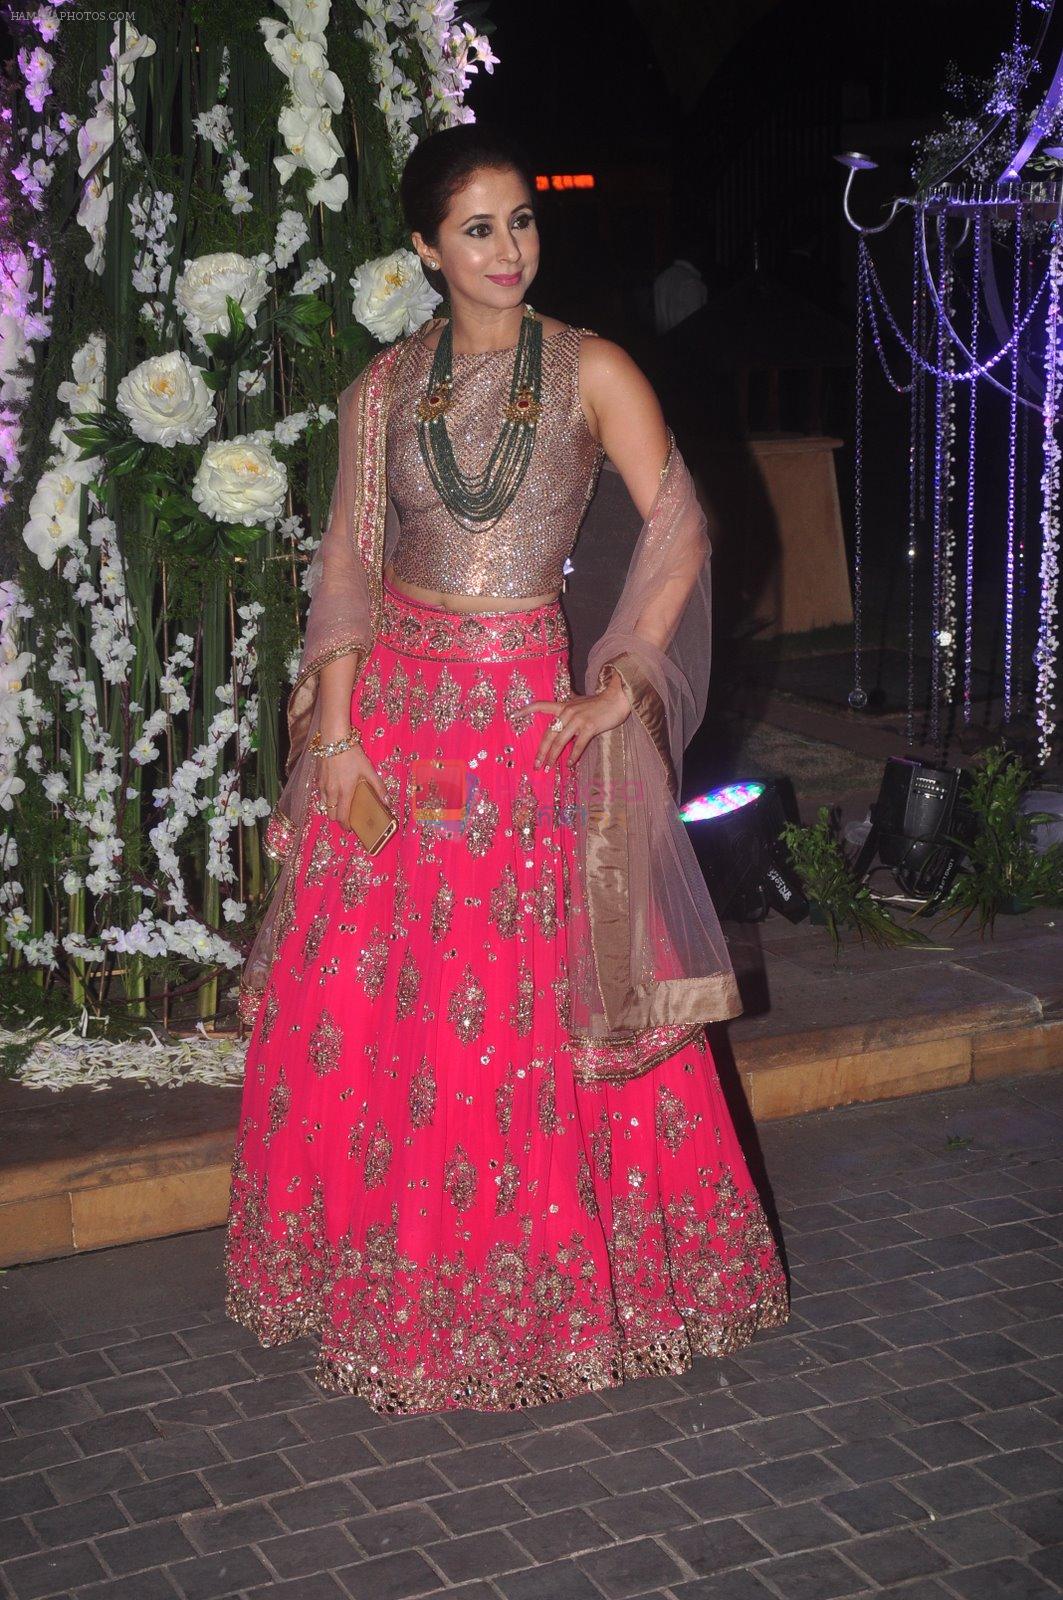 Urmila Matondkar at Sangeet ceremony of Riddhi Malhotra and Tejas Talwalkar in J W Marriott, Mumbai on 13th Dec 2014